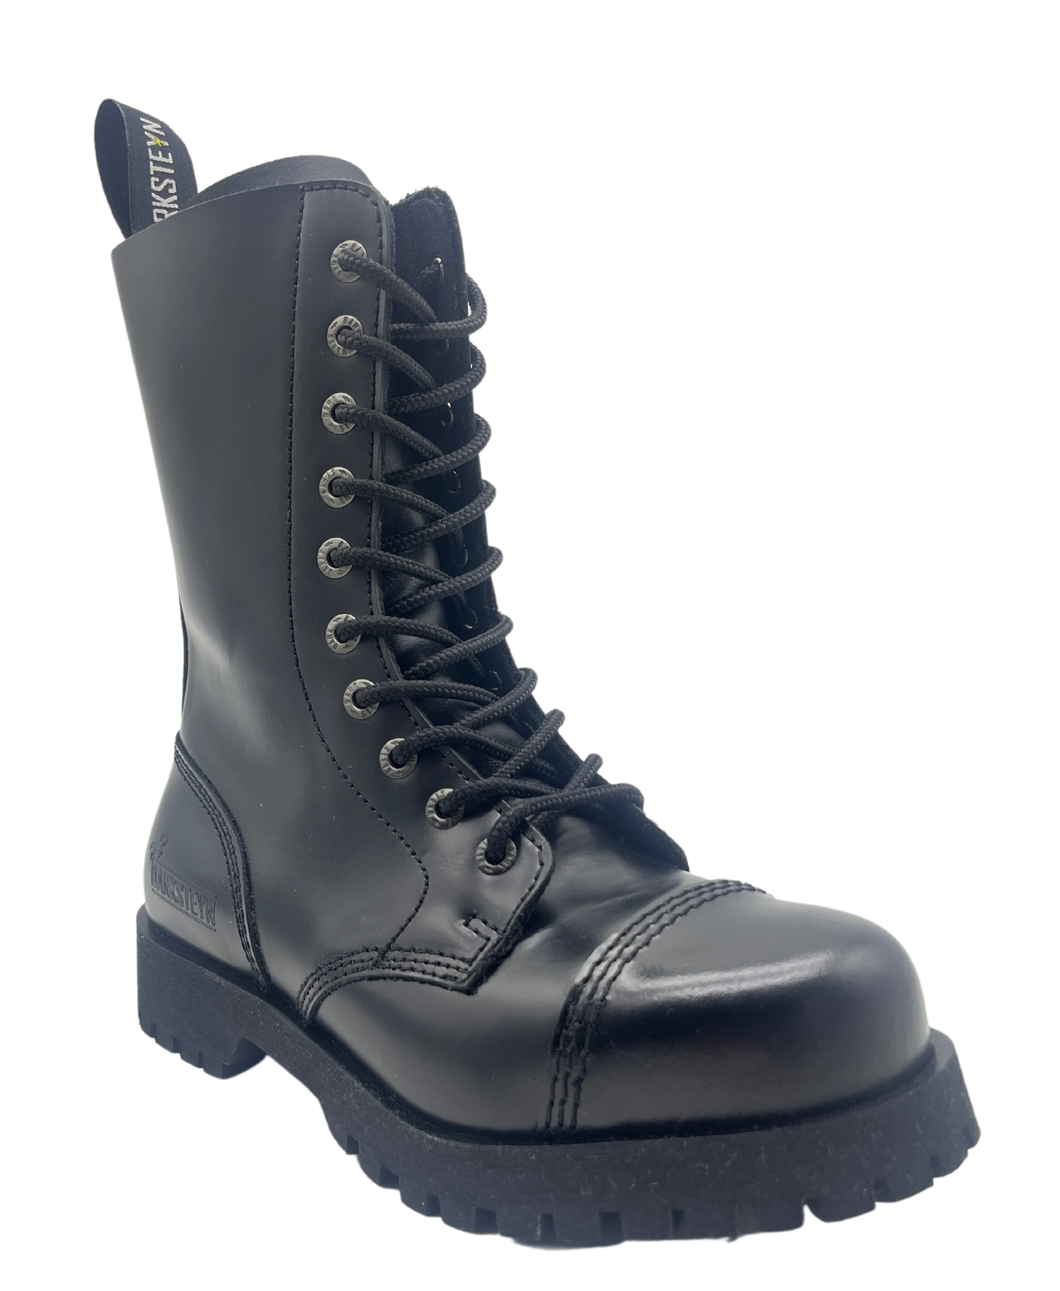 Darksteyn Stiefel Schuhe 10 Eye Ranger Premium Boots Black